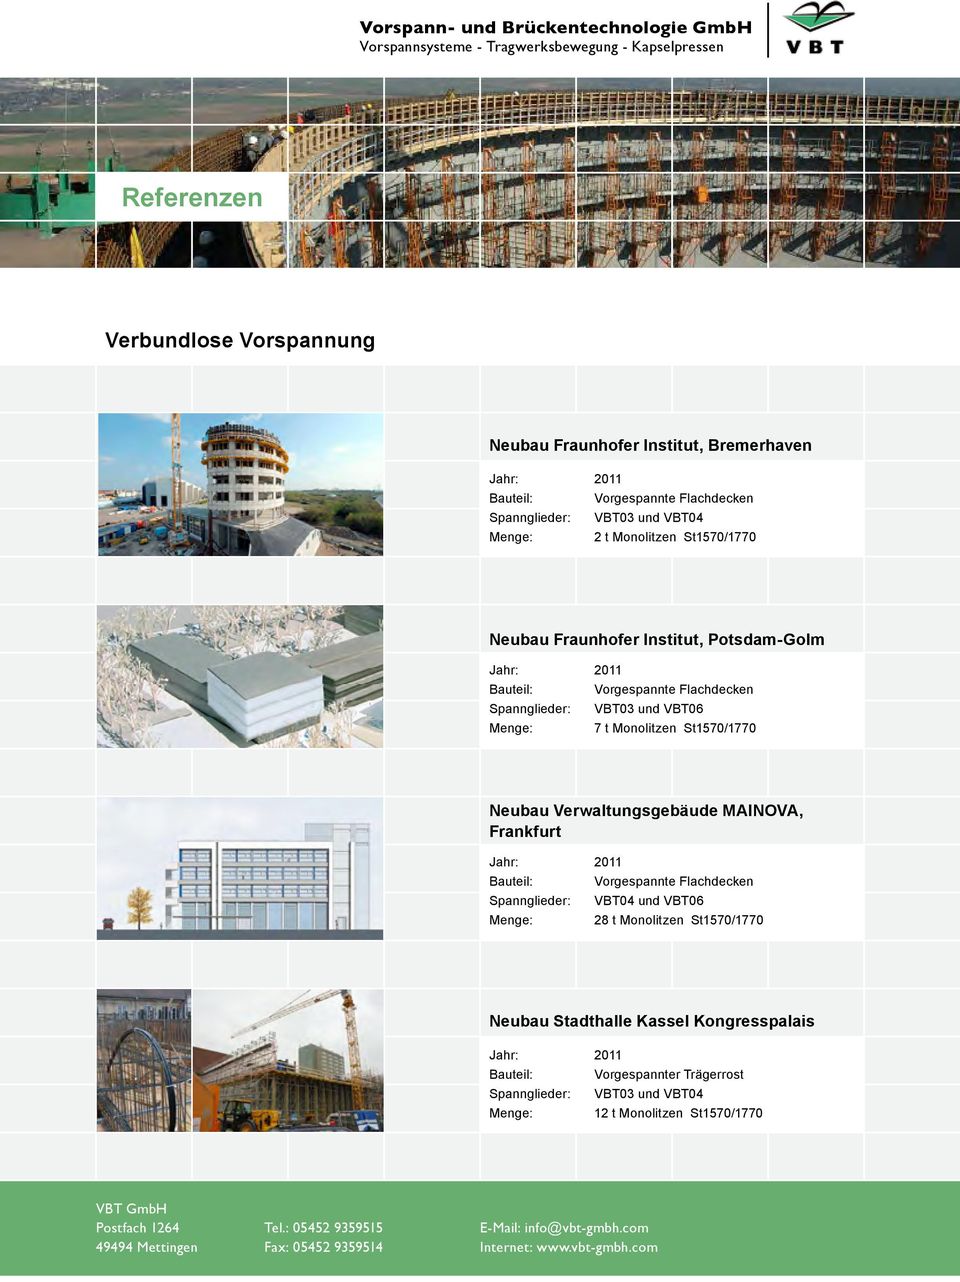 Neubau Verwaltungsgebäude MAINOVA, Frankfurt und VBT06 Menge: 28 t Monolitzen St1570/1770 Neubau Stadthalle